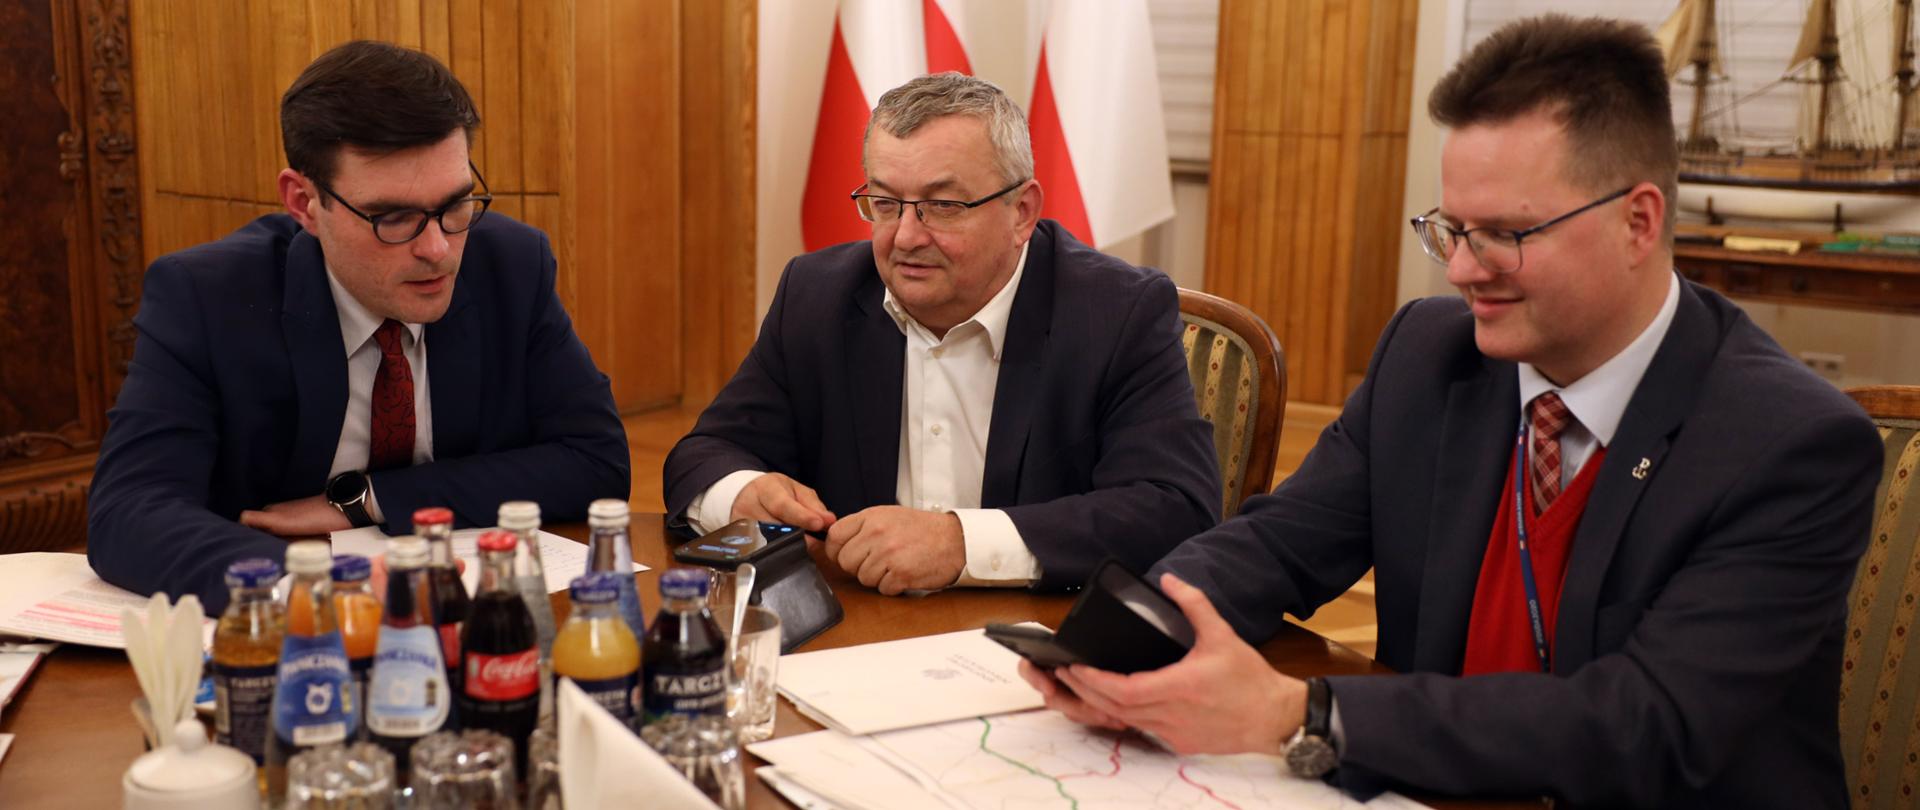 Rozmowa ministrów Polski i Ukrainy o transporcie kolejowym 